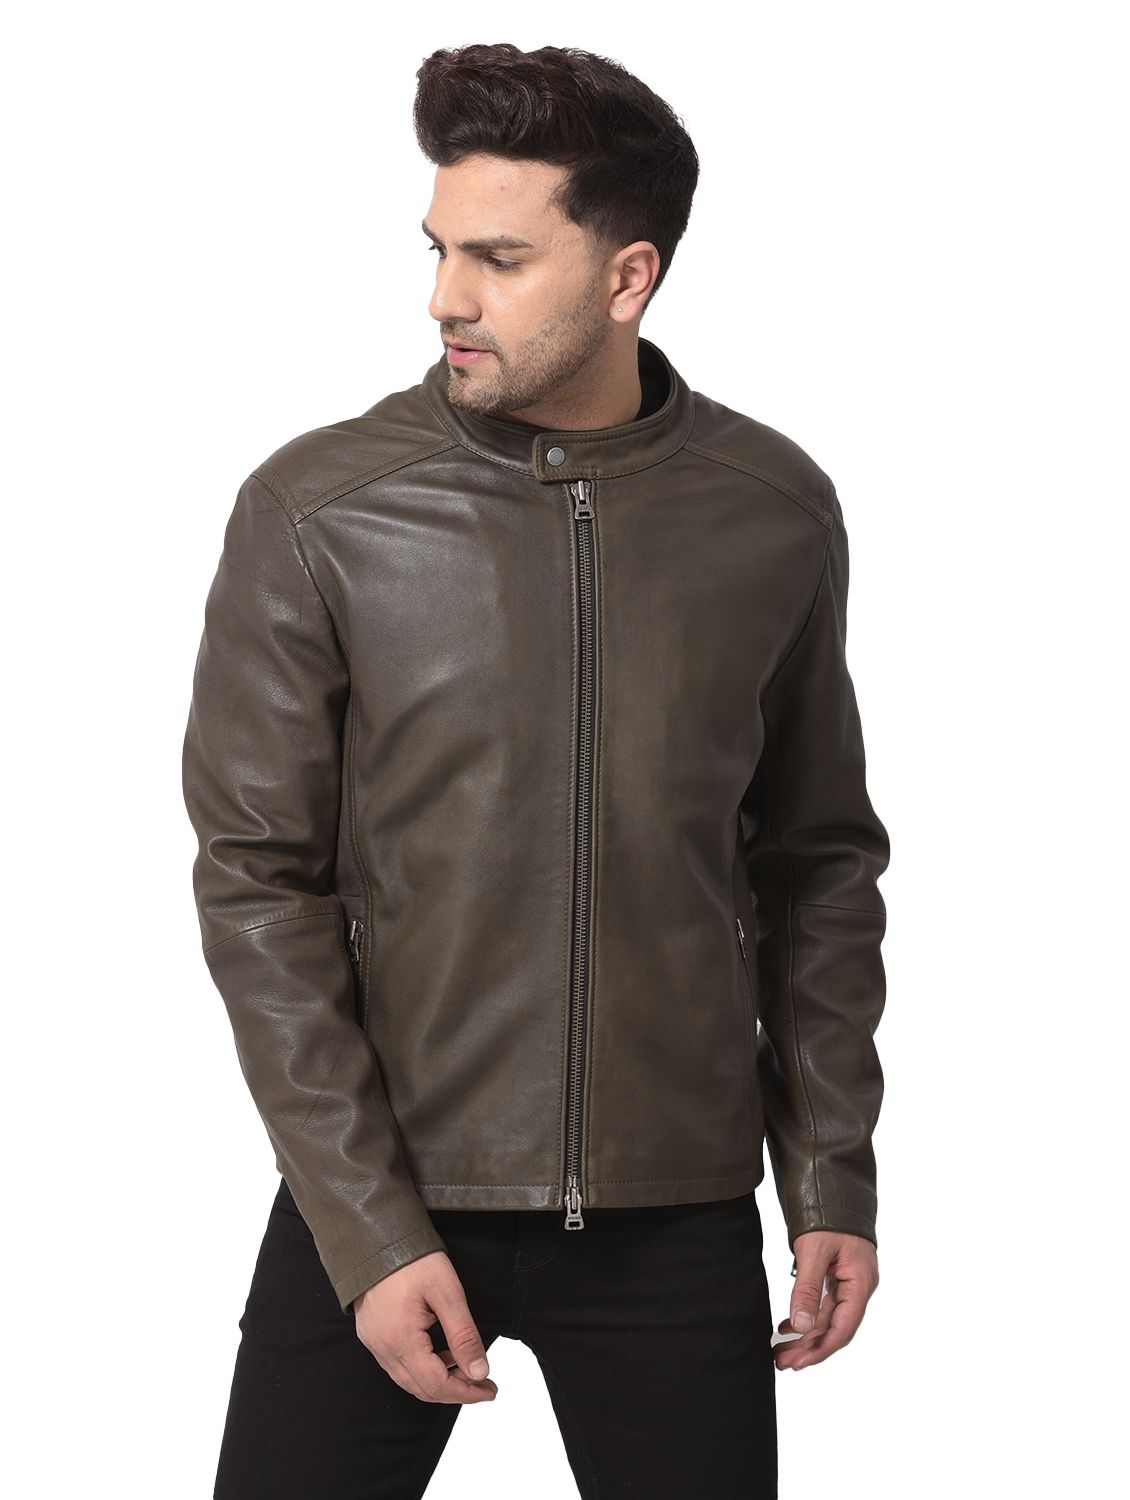 Olive leather jacket for men